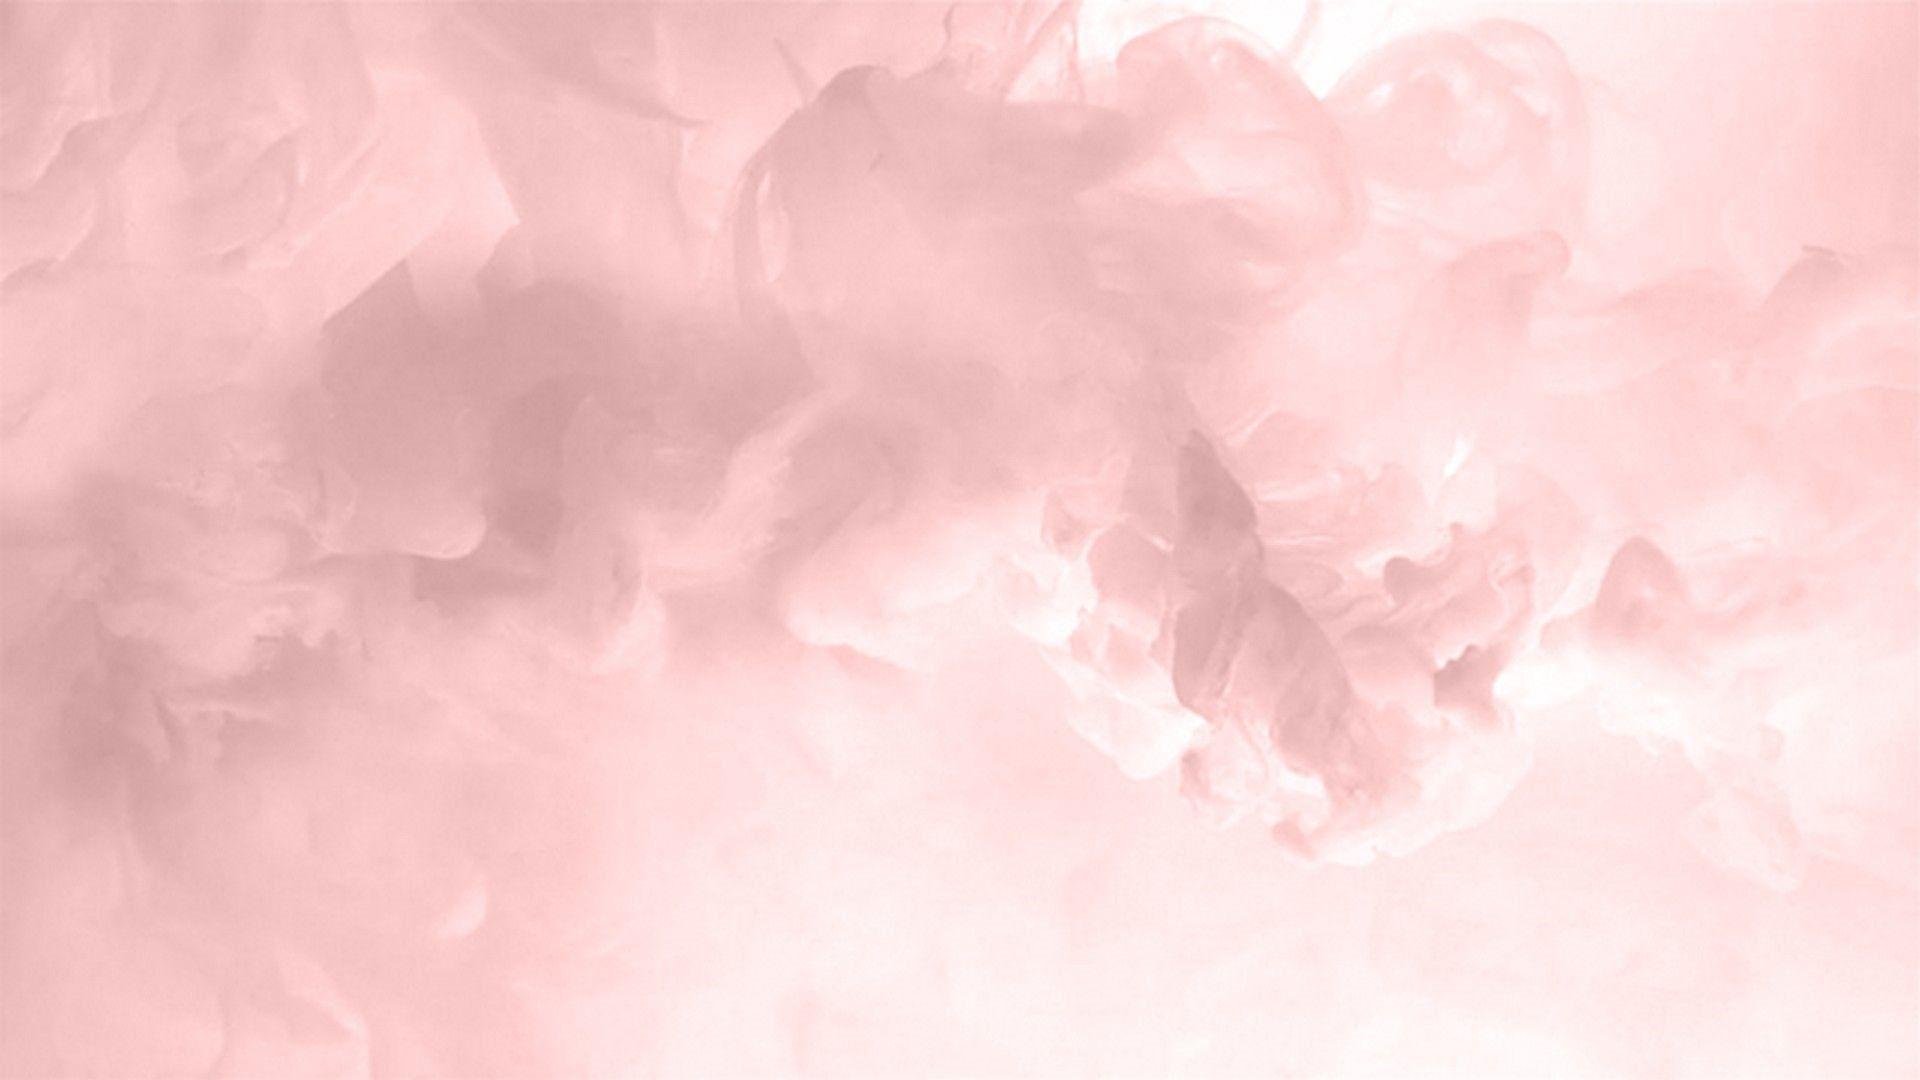 Tinh tế và nhẹ nhàng, hình nền desktop pastel hồng làm cho mọi người phải trầm trồ không ngớt. Hãy truy cập ngay để xem!